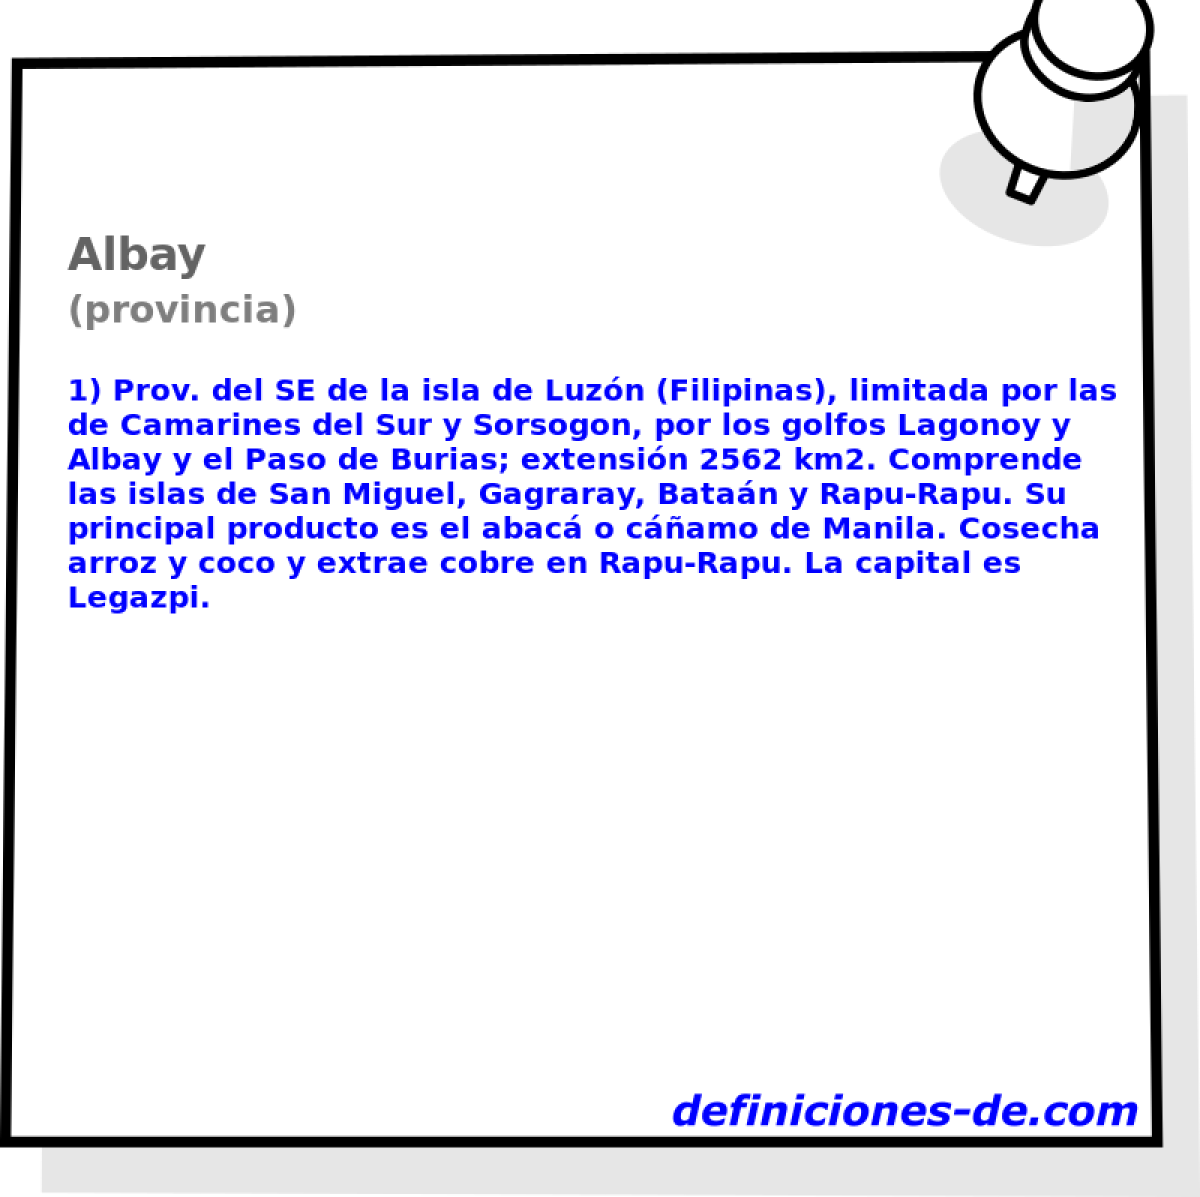 Albay (provincia)